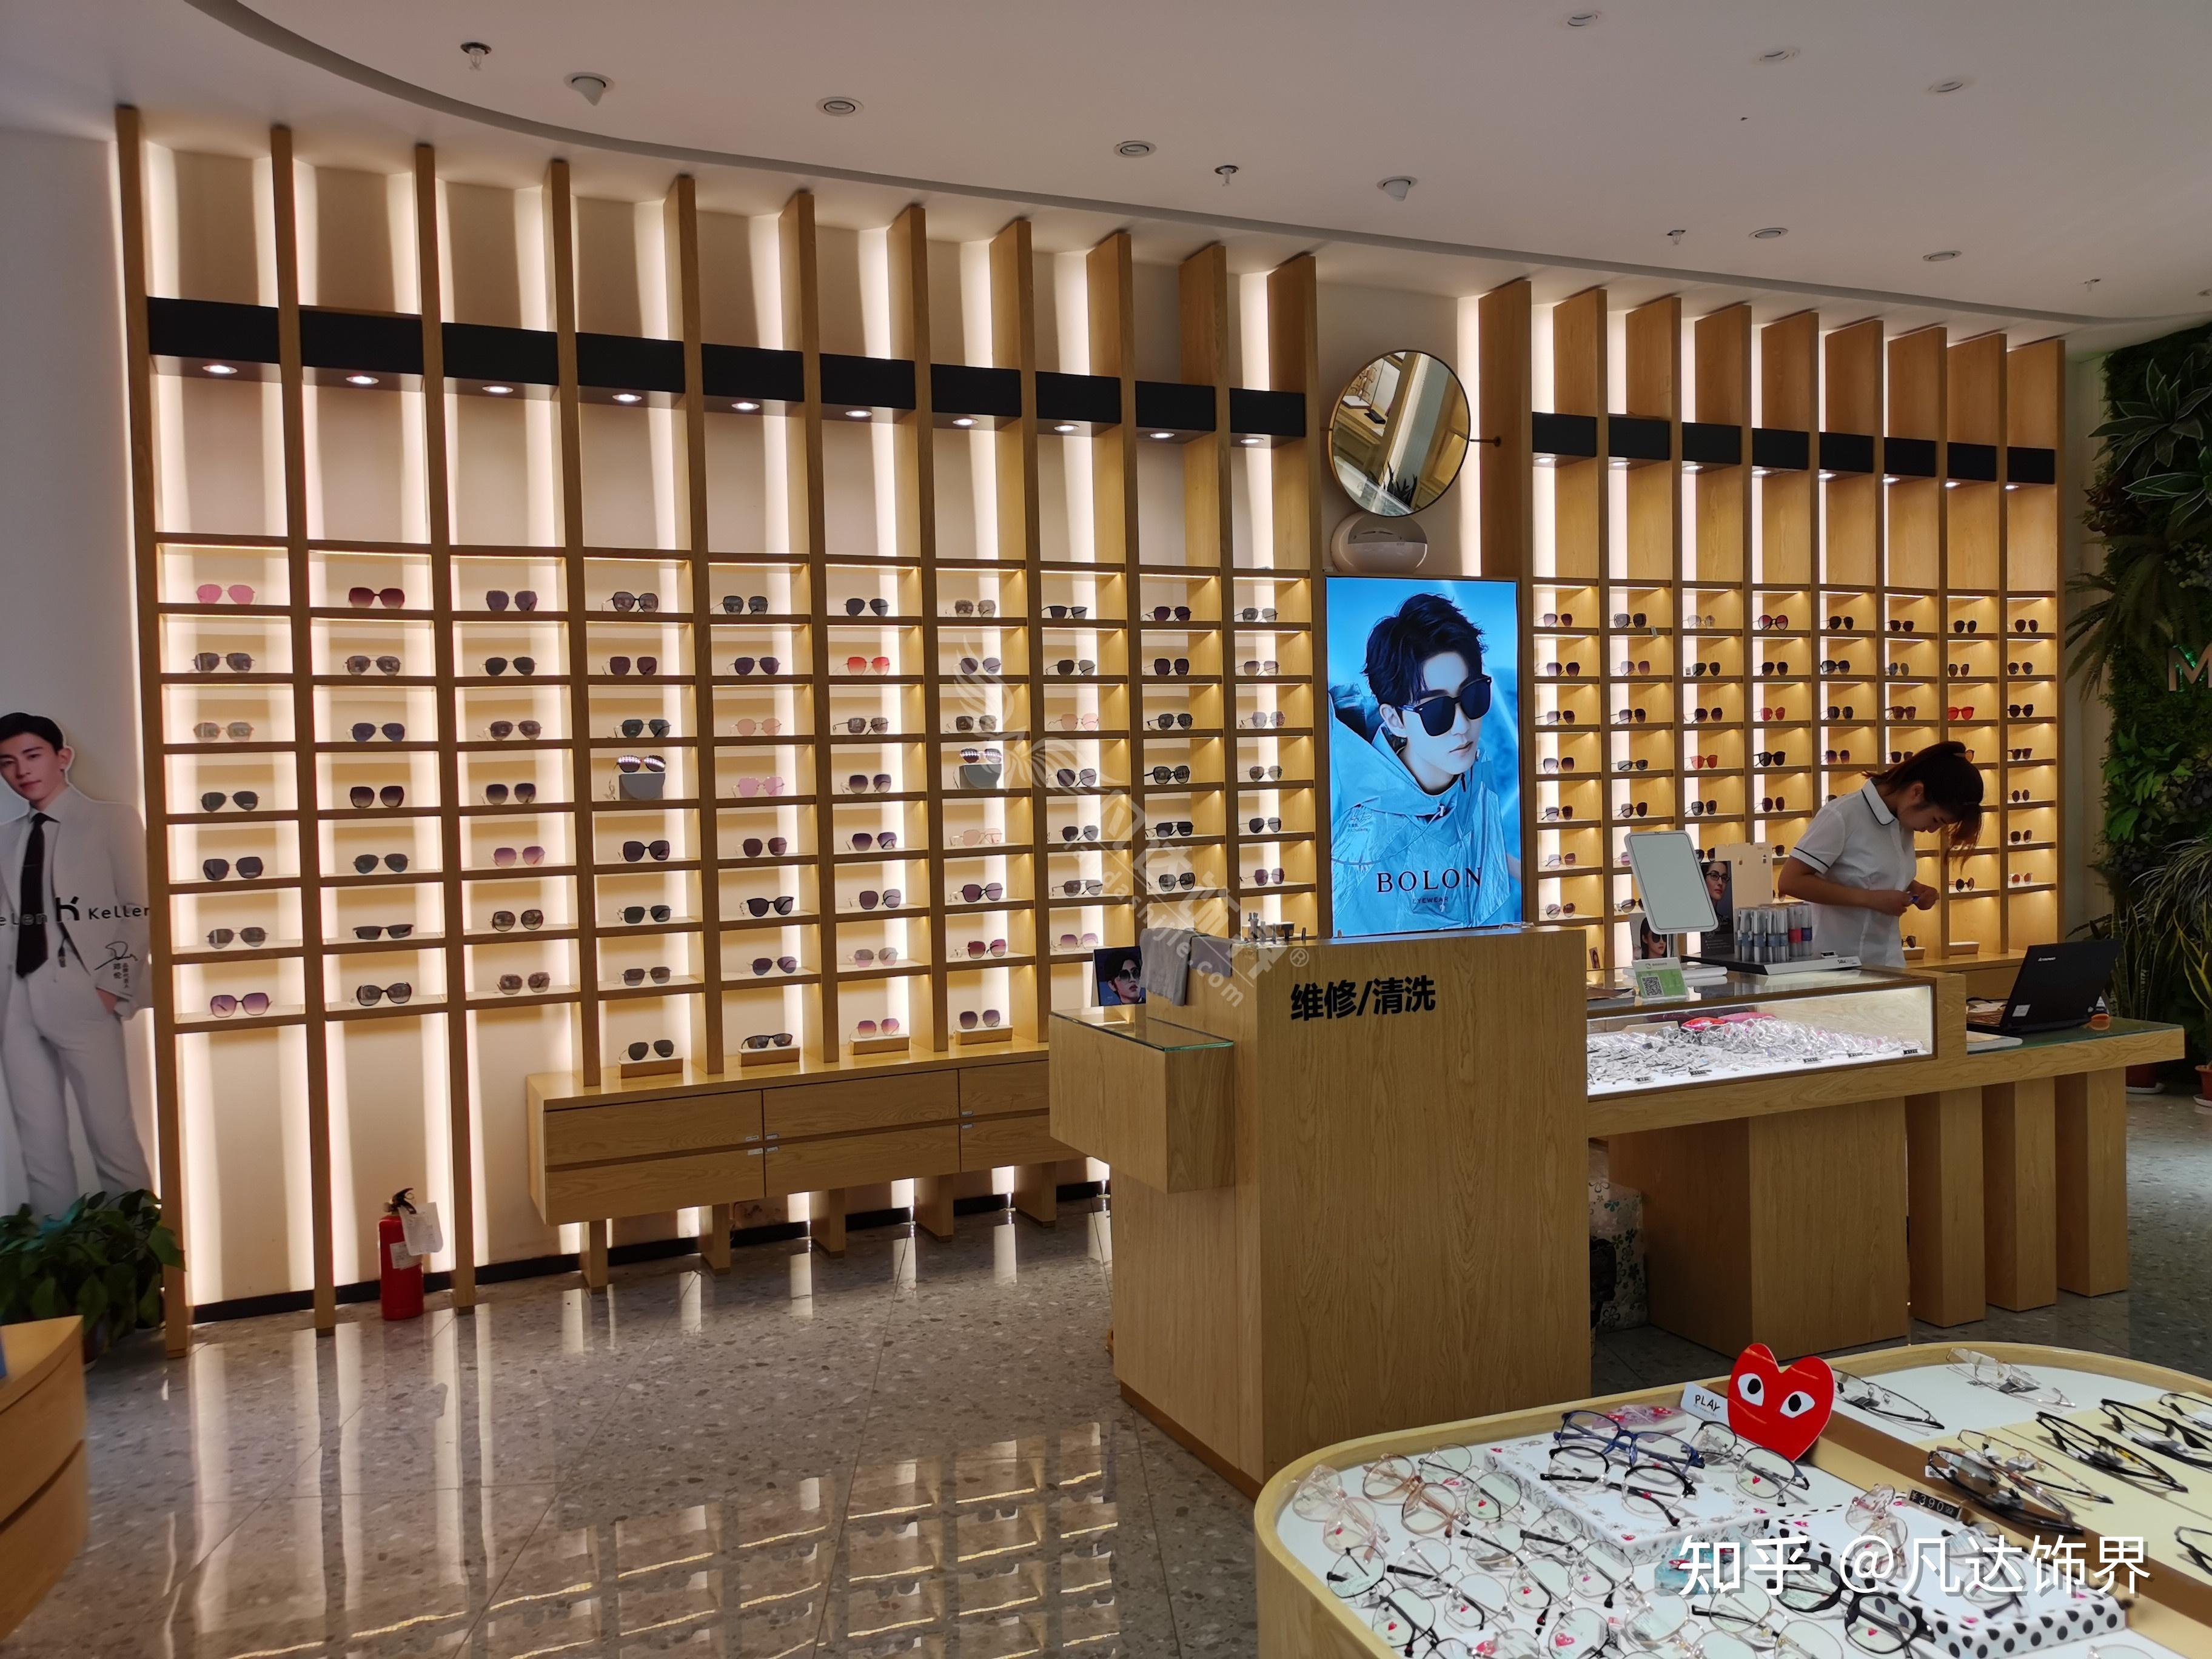 日本入间这家来自日本的眼镜店,充分利用了色彩的魅力,来使得整个店铺